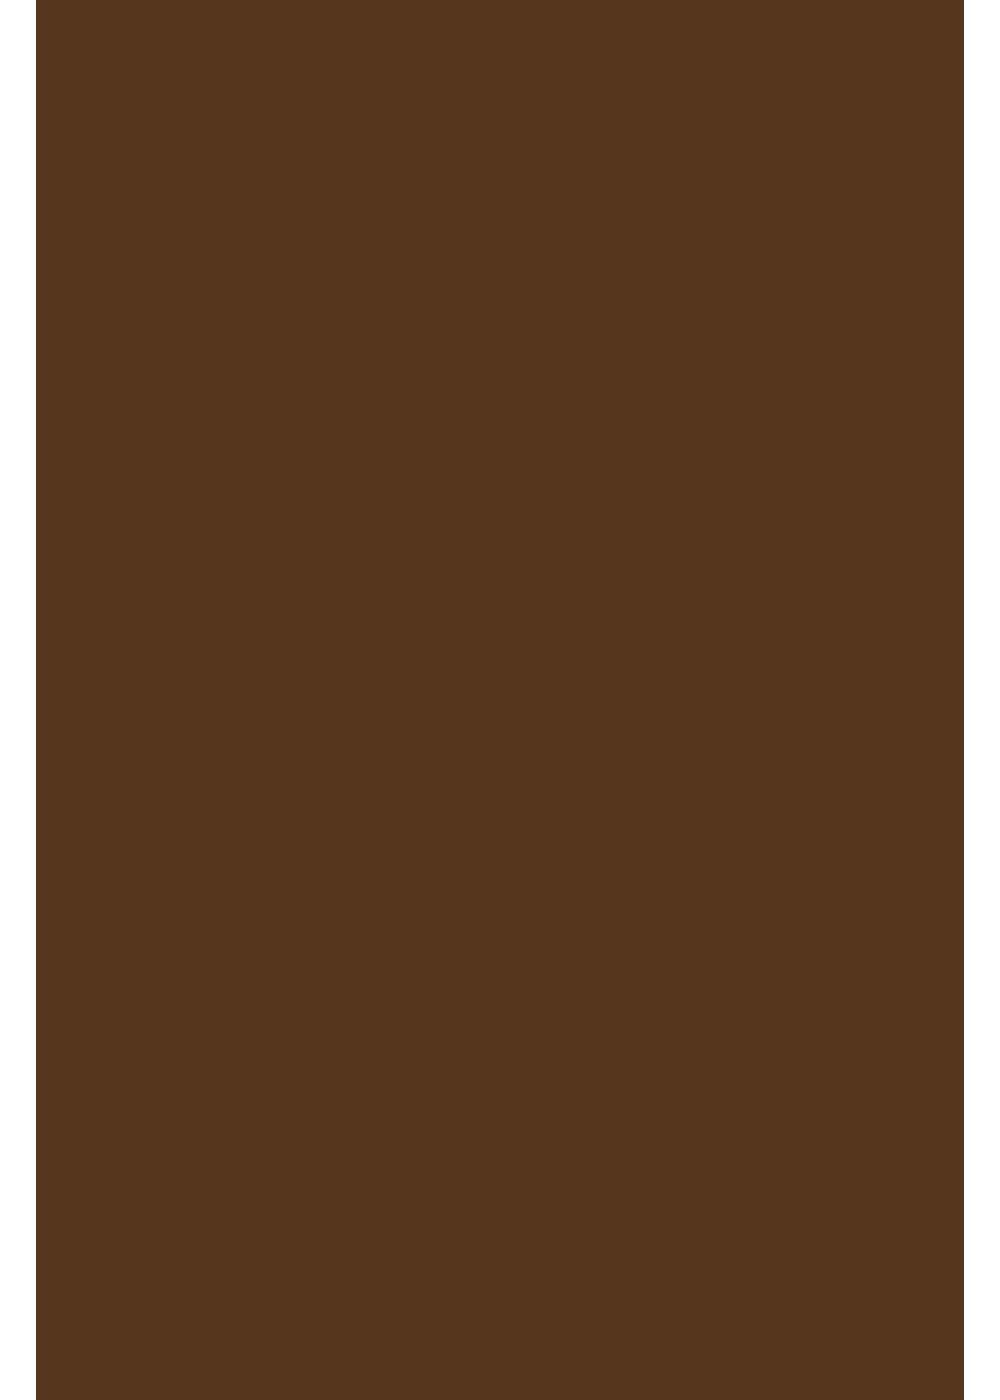 Chocolate Plottern - zum A4 perfekt Hilltop Transferfolie/Textilfolie zum Transparentpapier Aufbügeln